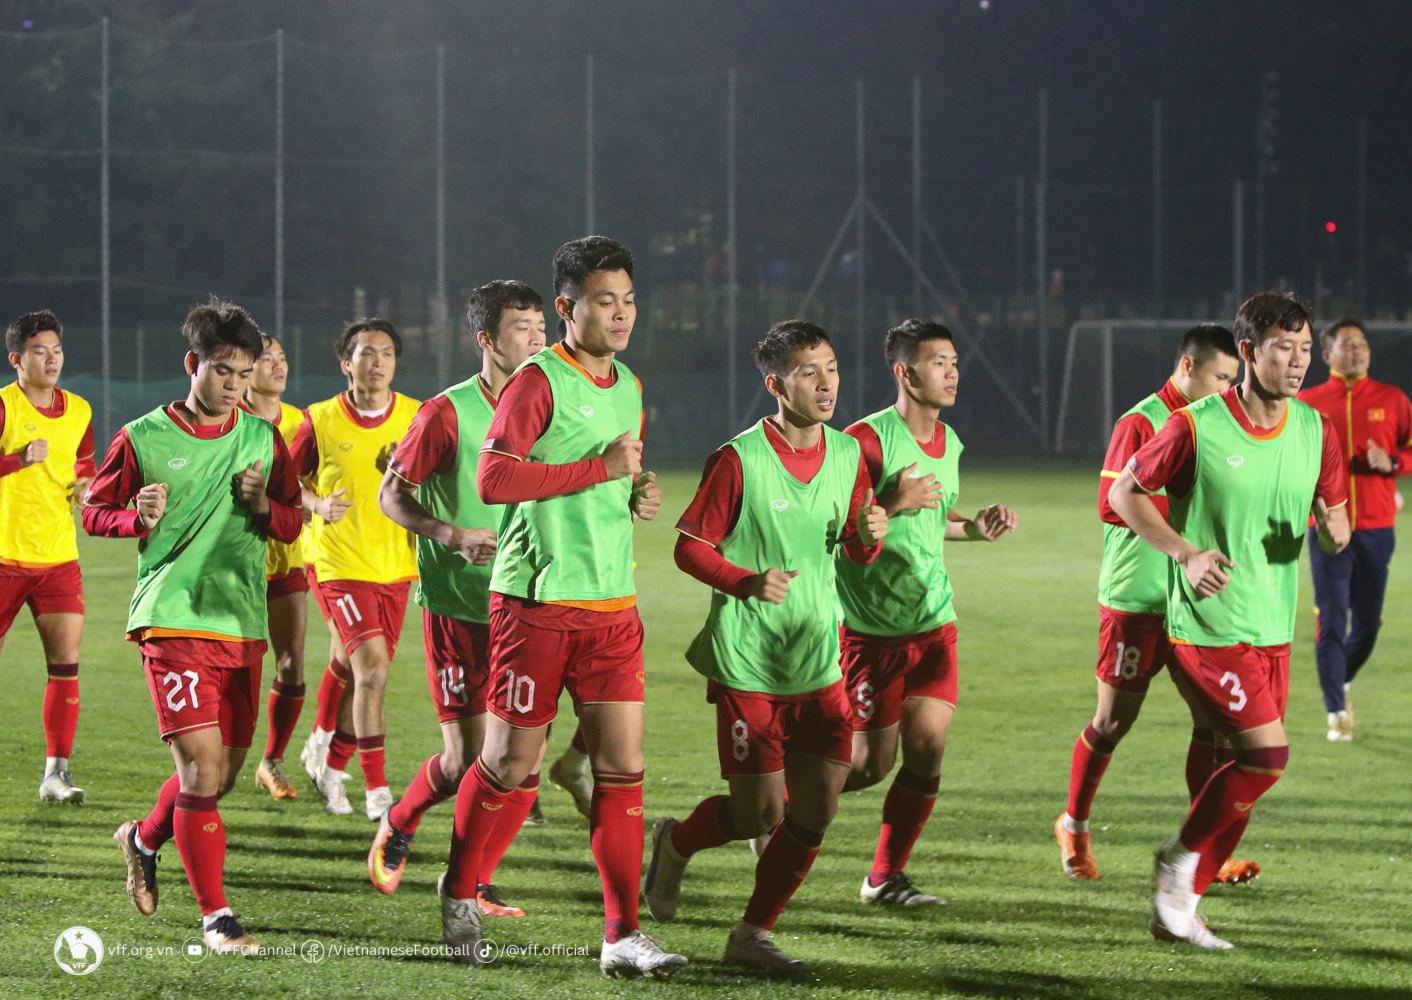 Đội tuyển Việt Nam tập buổi đầu ở Hàn Quốc, Quang Hải vắng mặt